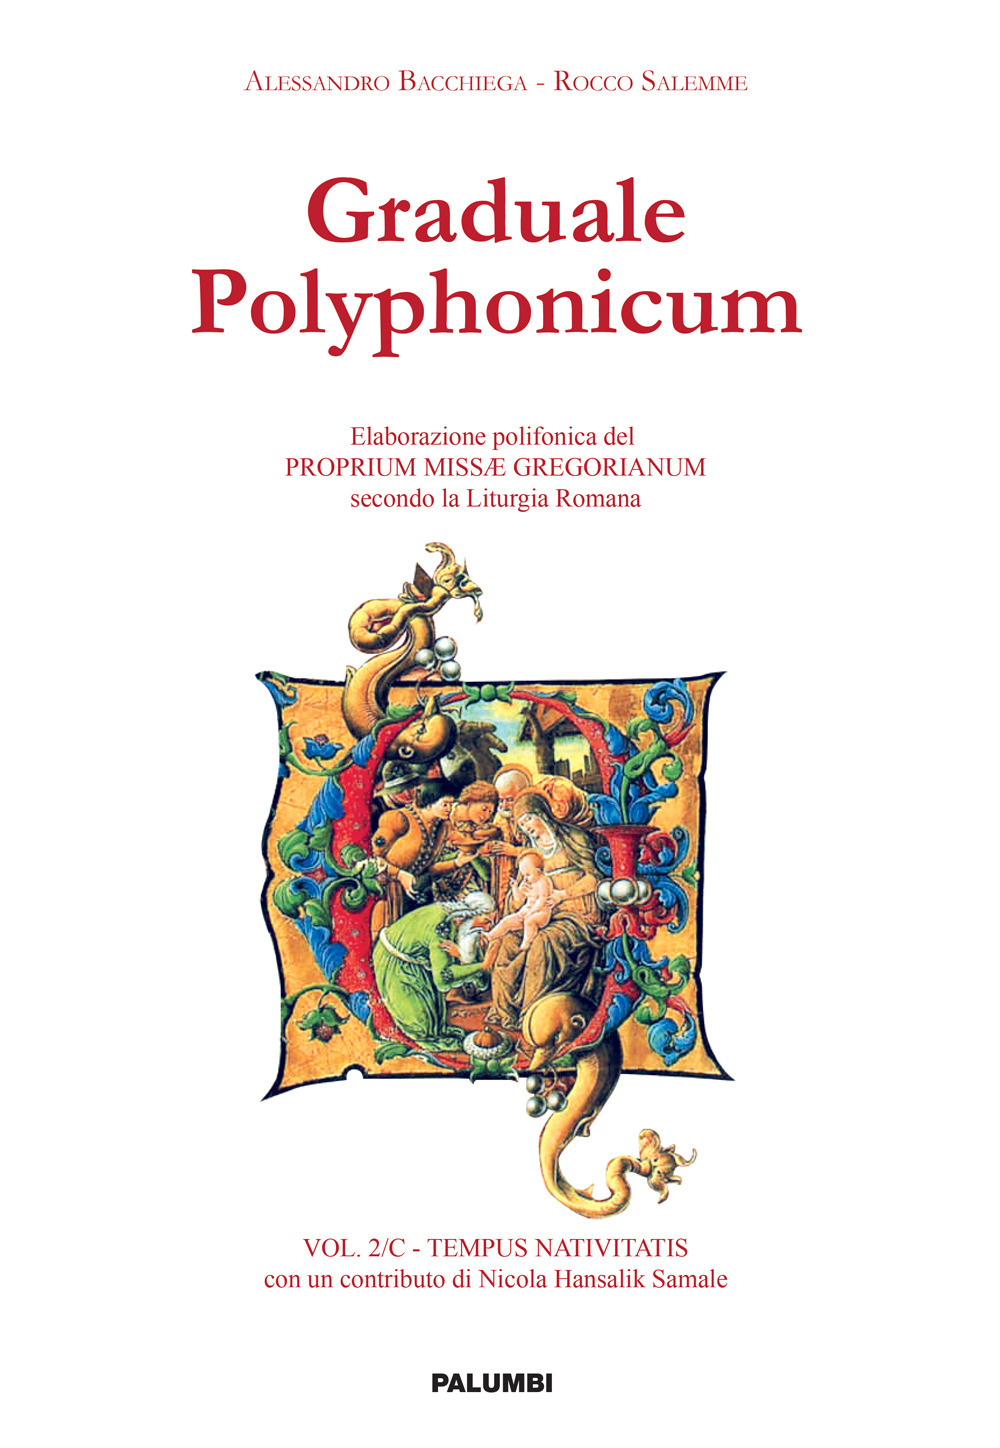 Graduale polyphonicum. Elaborazione polifonica del proprium missae gregorianum secondo la liturgia romana. Vol. 2/C: Tempus nativitatis